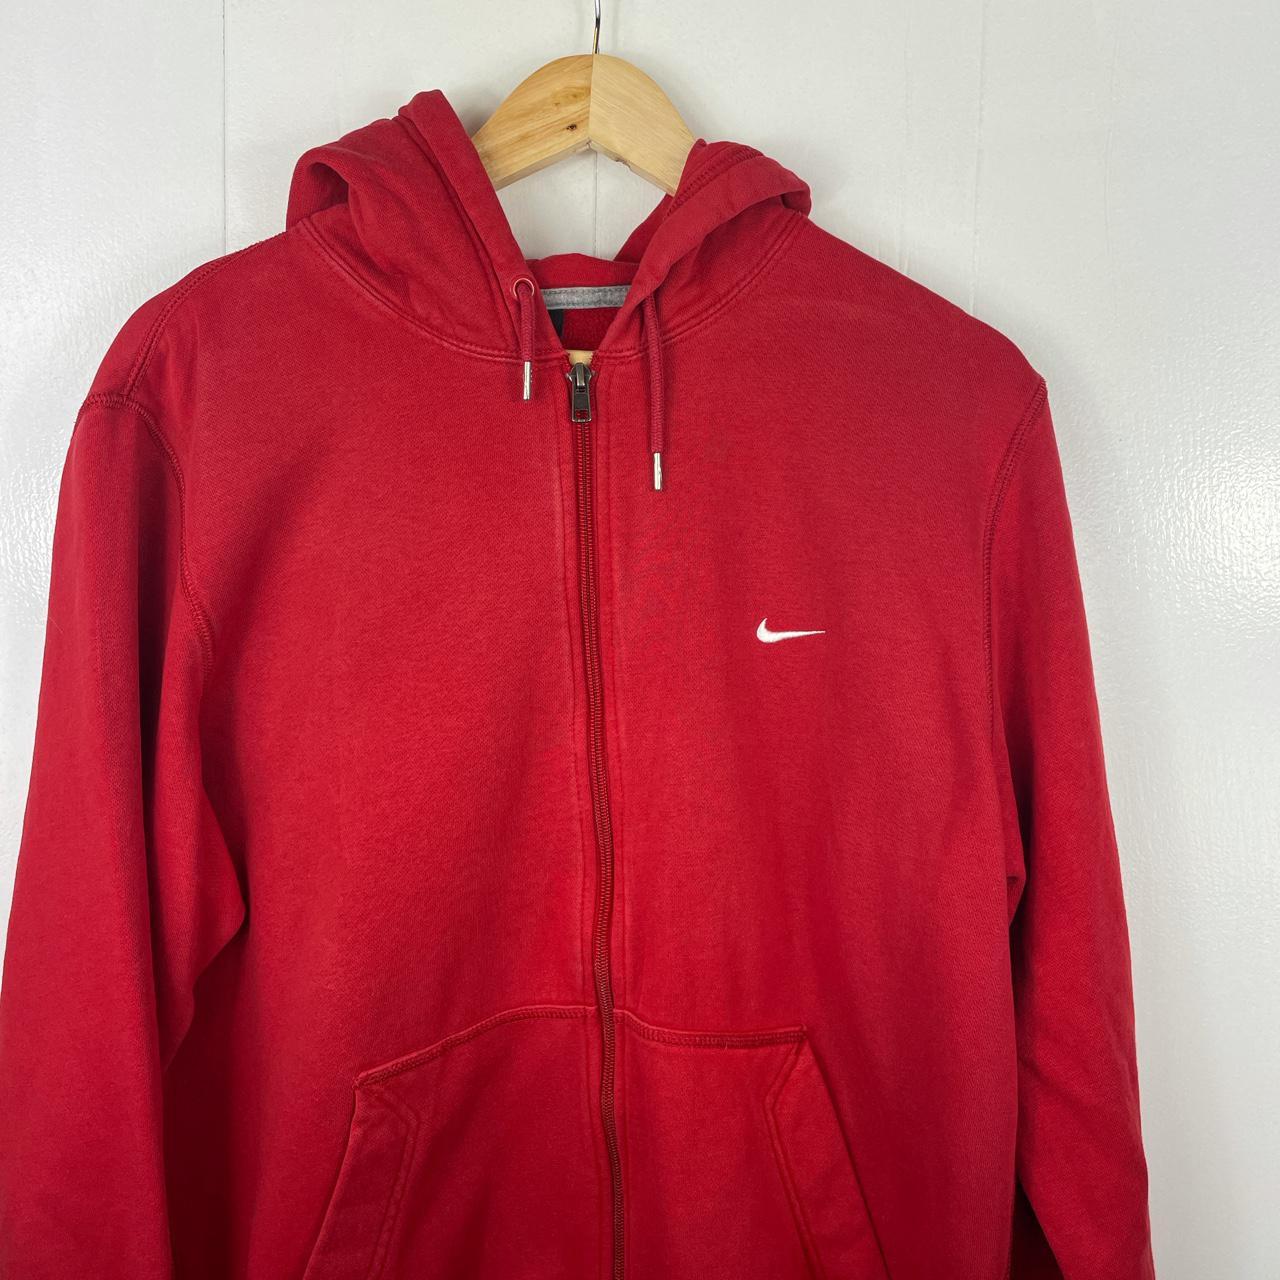 Nike vintage full zip hoodie in red with white... - Depop